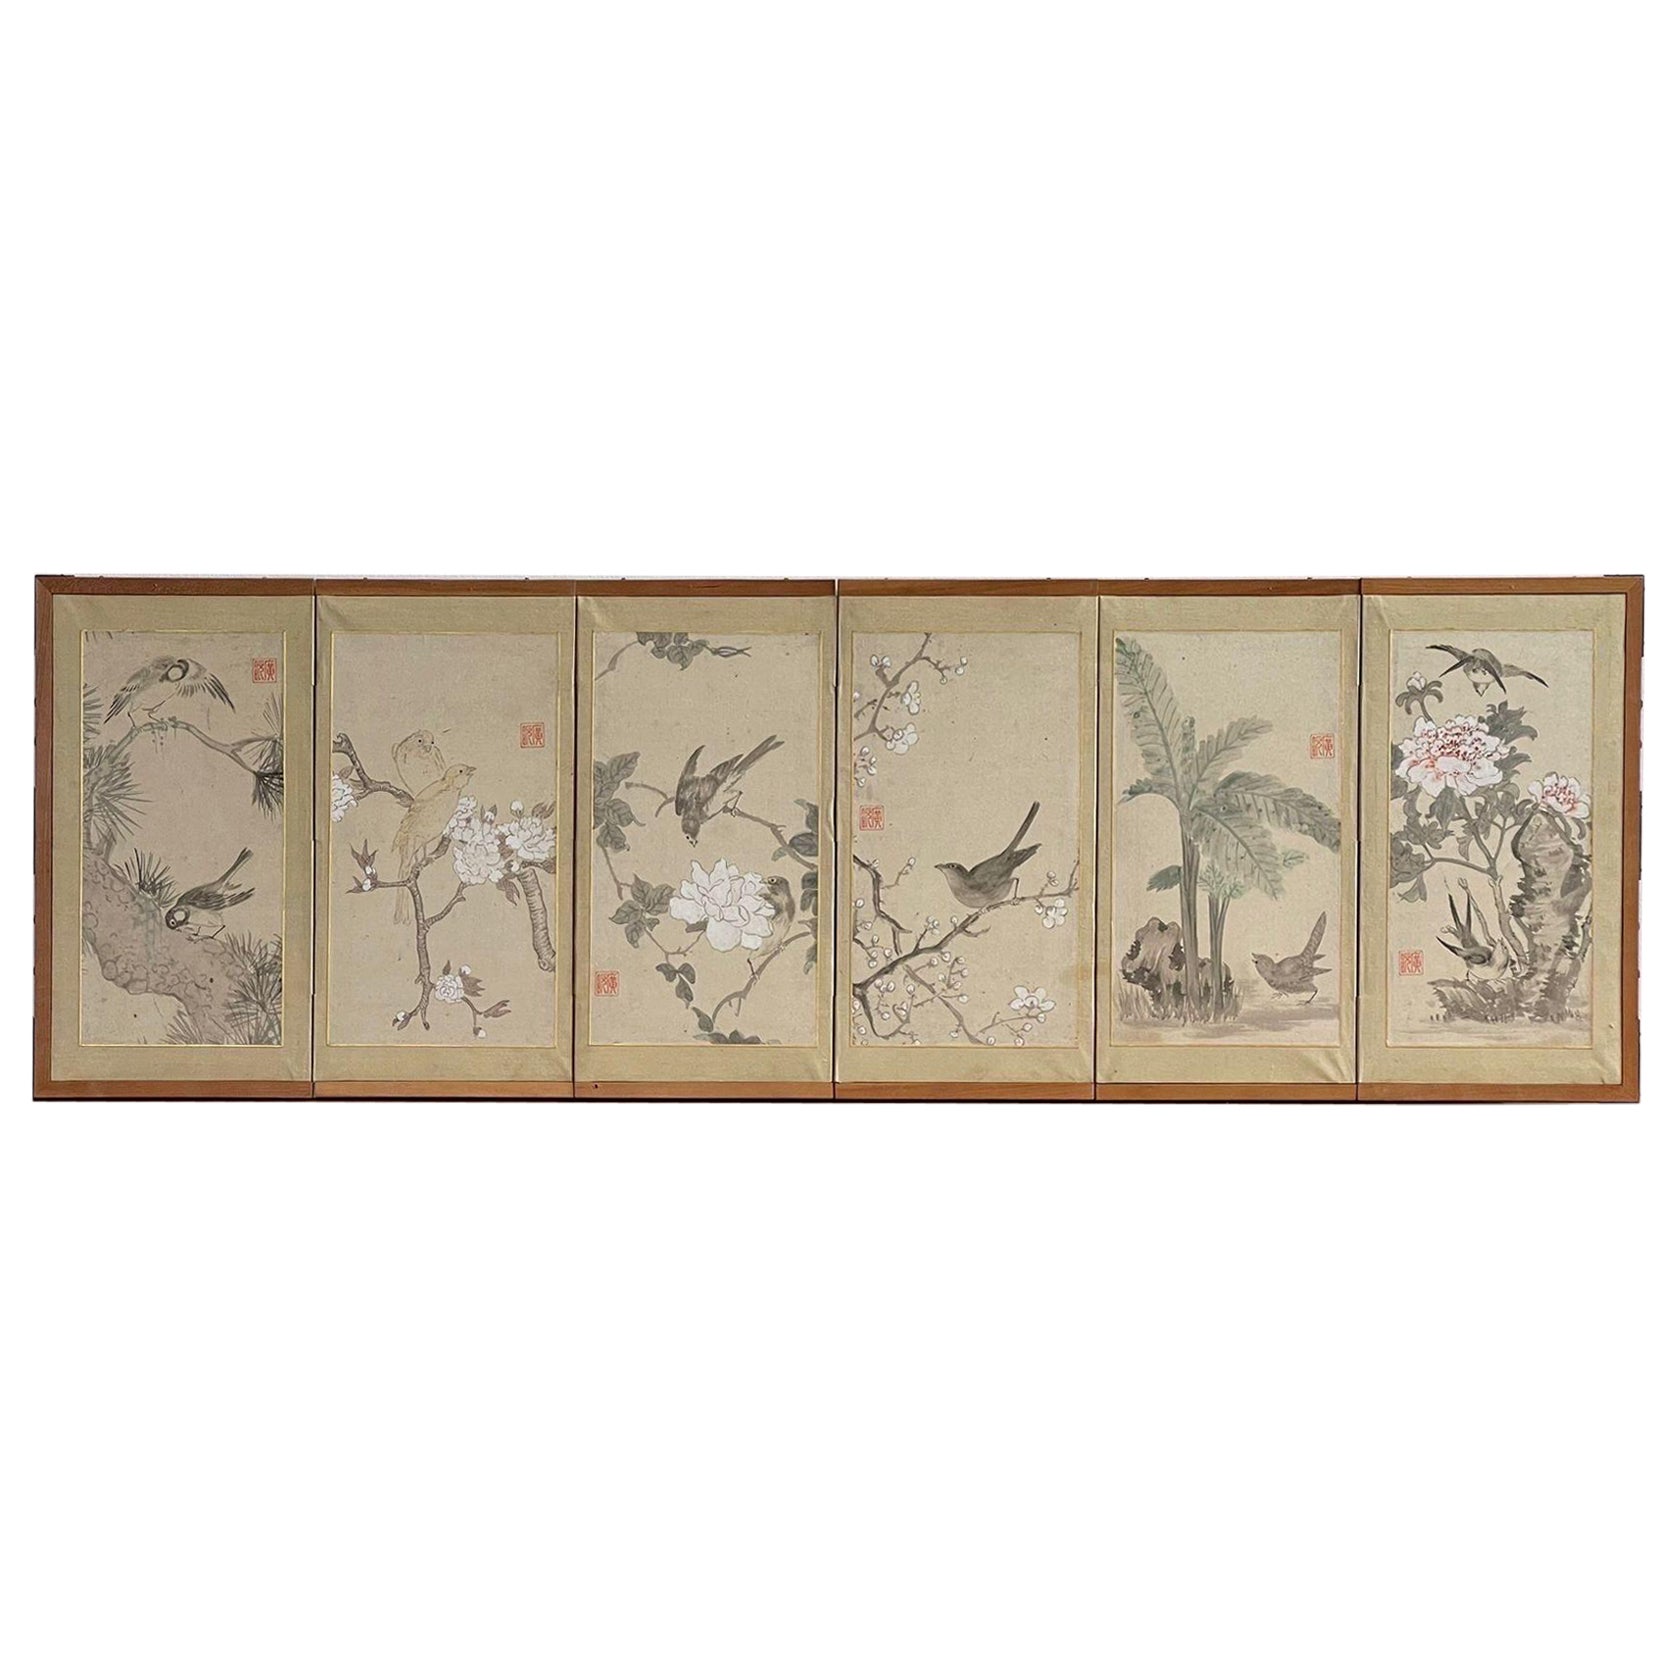 Vieille peinture japonaise à 6 panneaux, encadrée et signée, dans un cadre en bois.